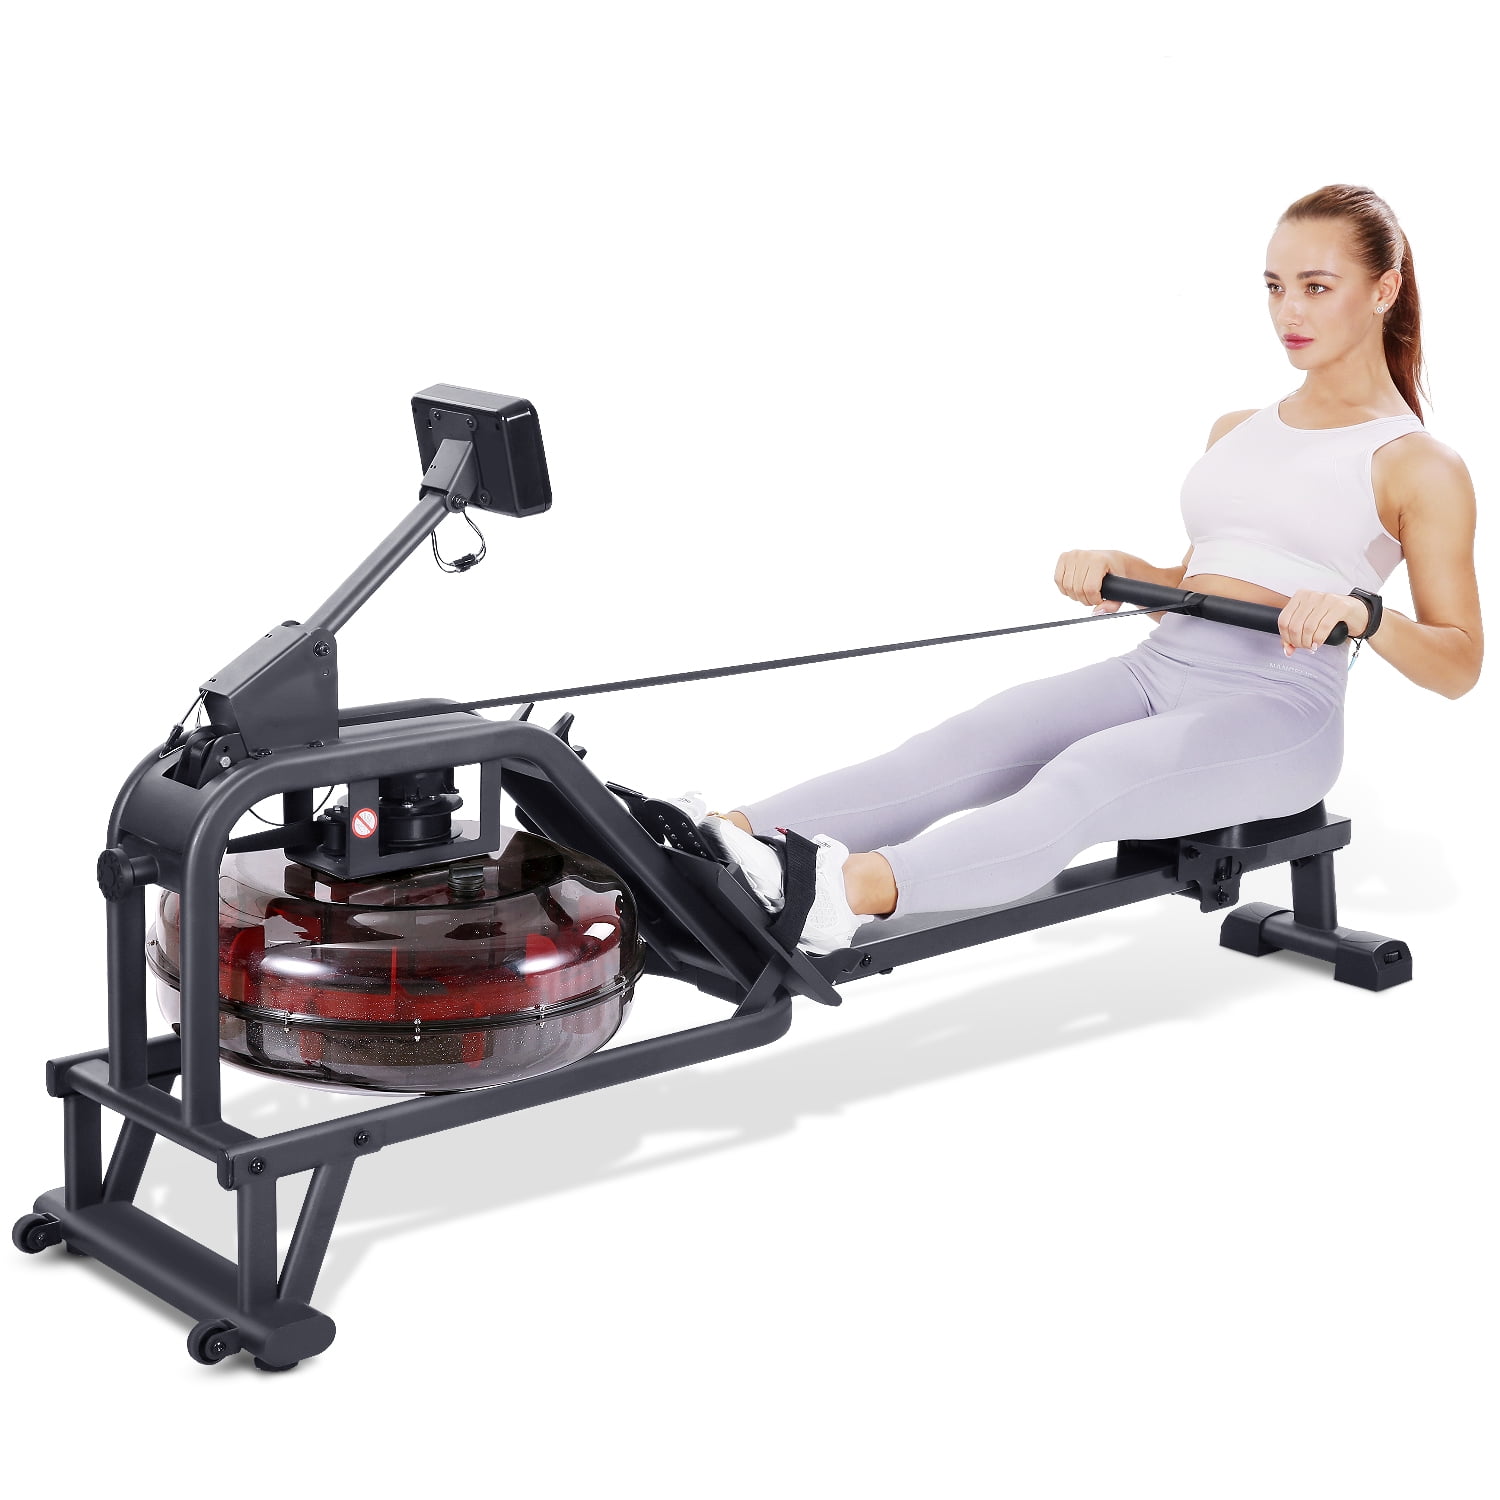 Rowing Machine For Strength Training | brebdude.com